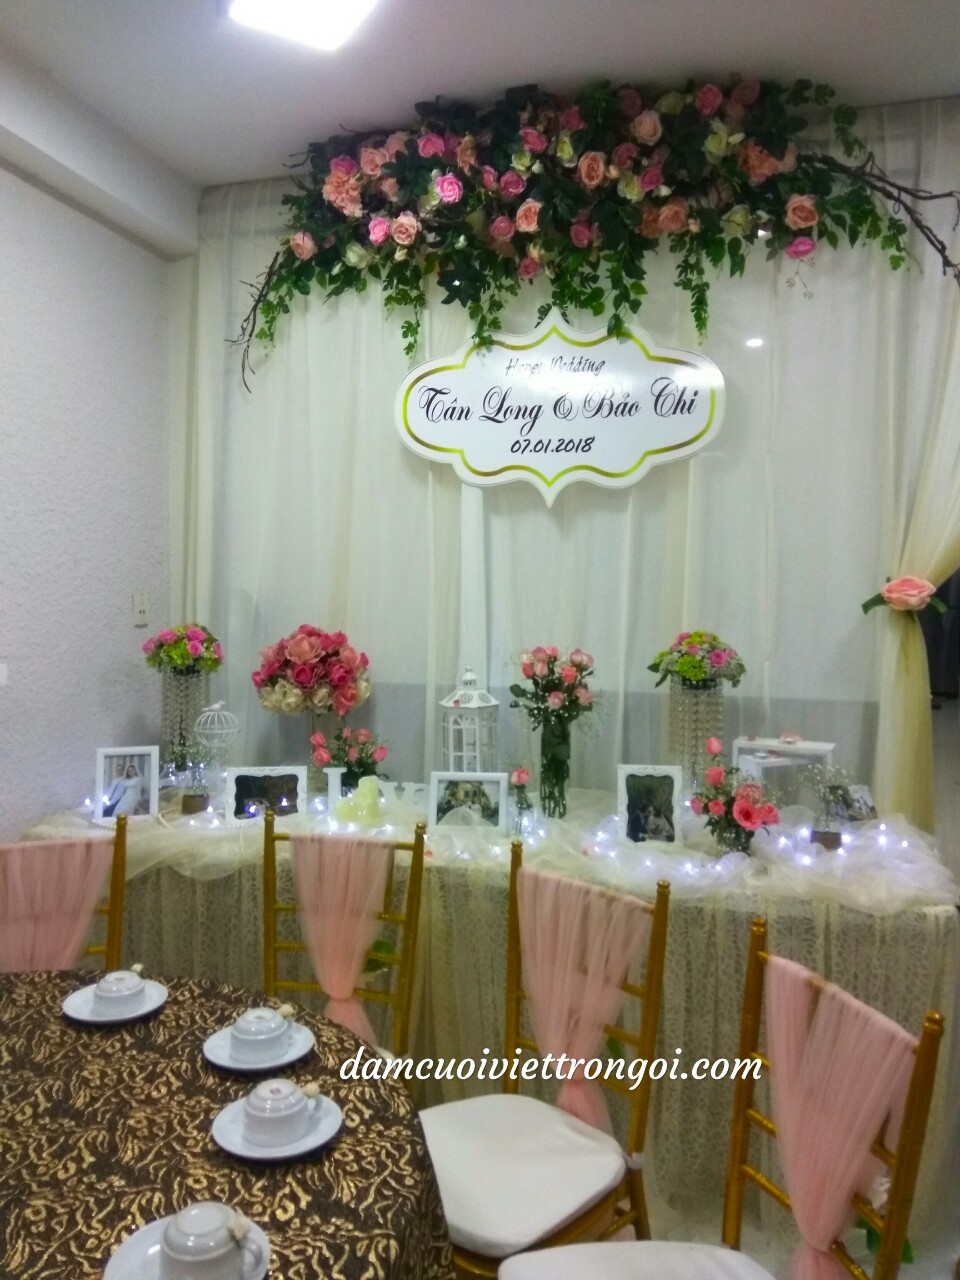 trang trí đám cưới với ghế Tiffany tông màu vàng hồng